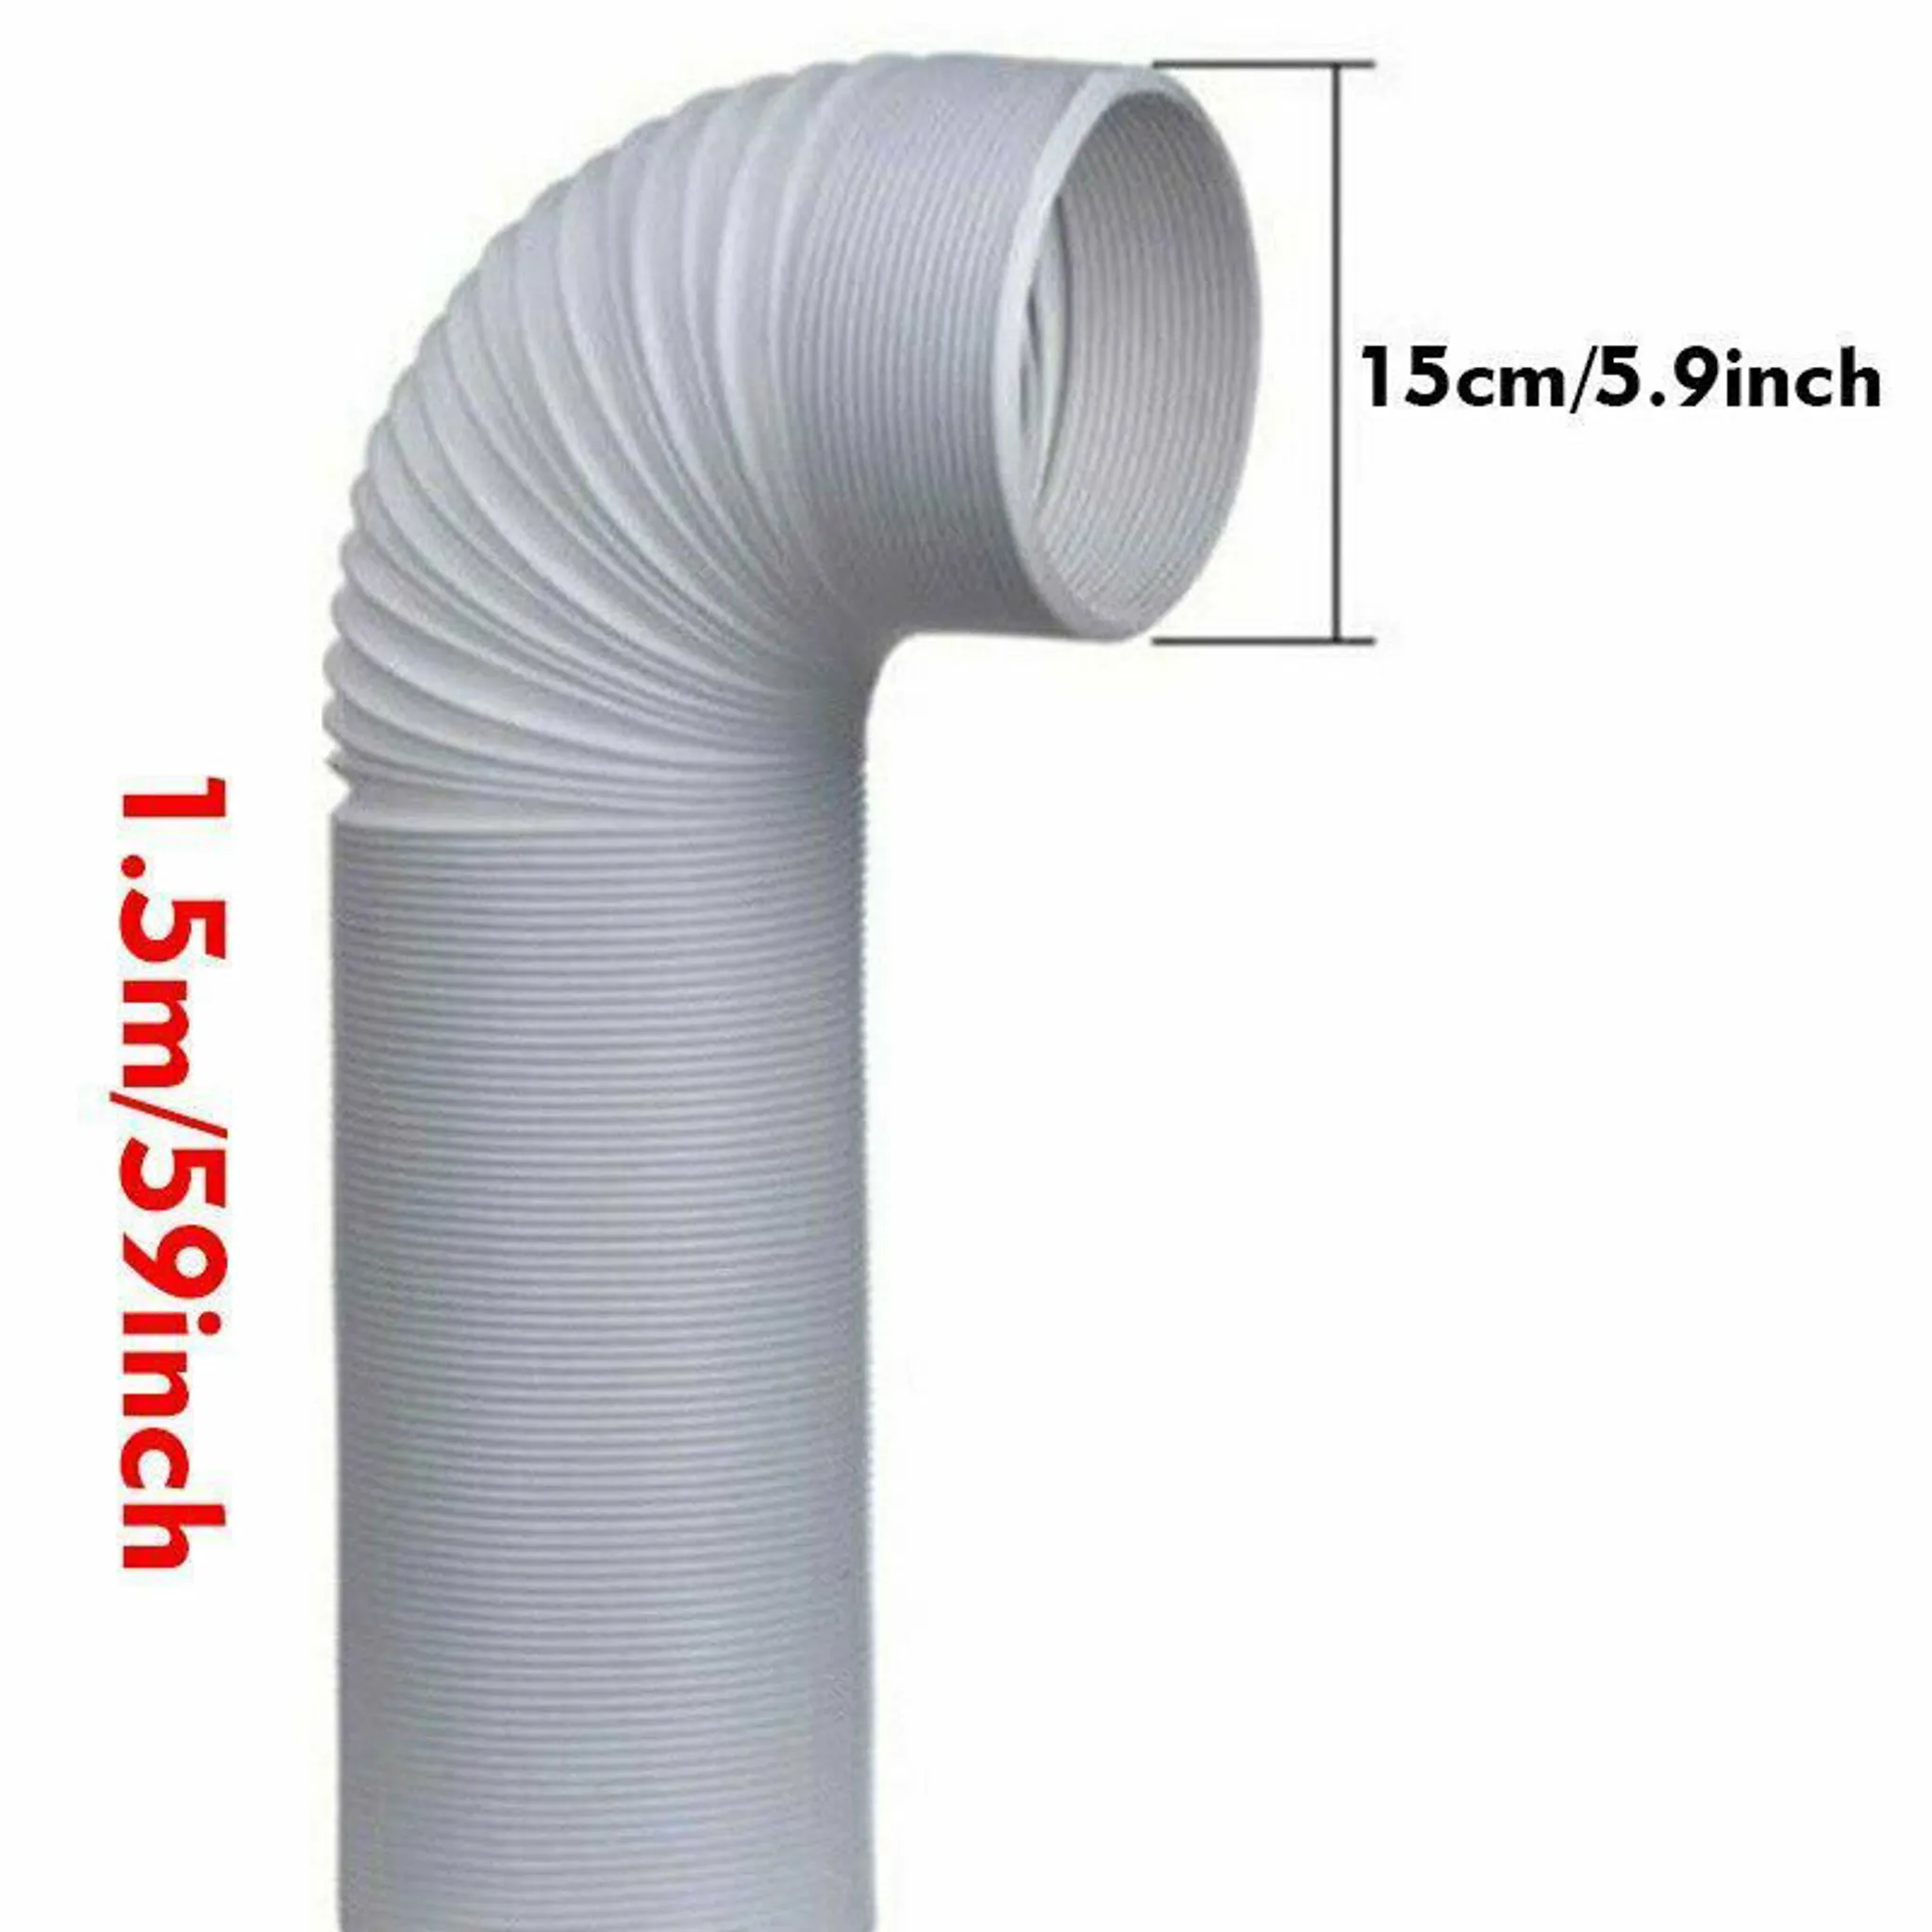 Schlauch für mobile lokale Klimaanlage, 2 m flexibler PVC-Ablaufschlauch  für Installation/gegen den Uhrzeigersinn (Ø13